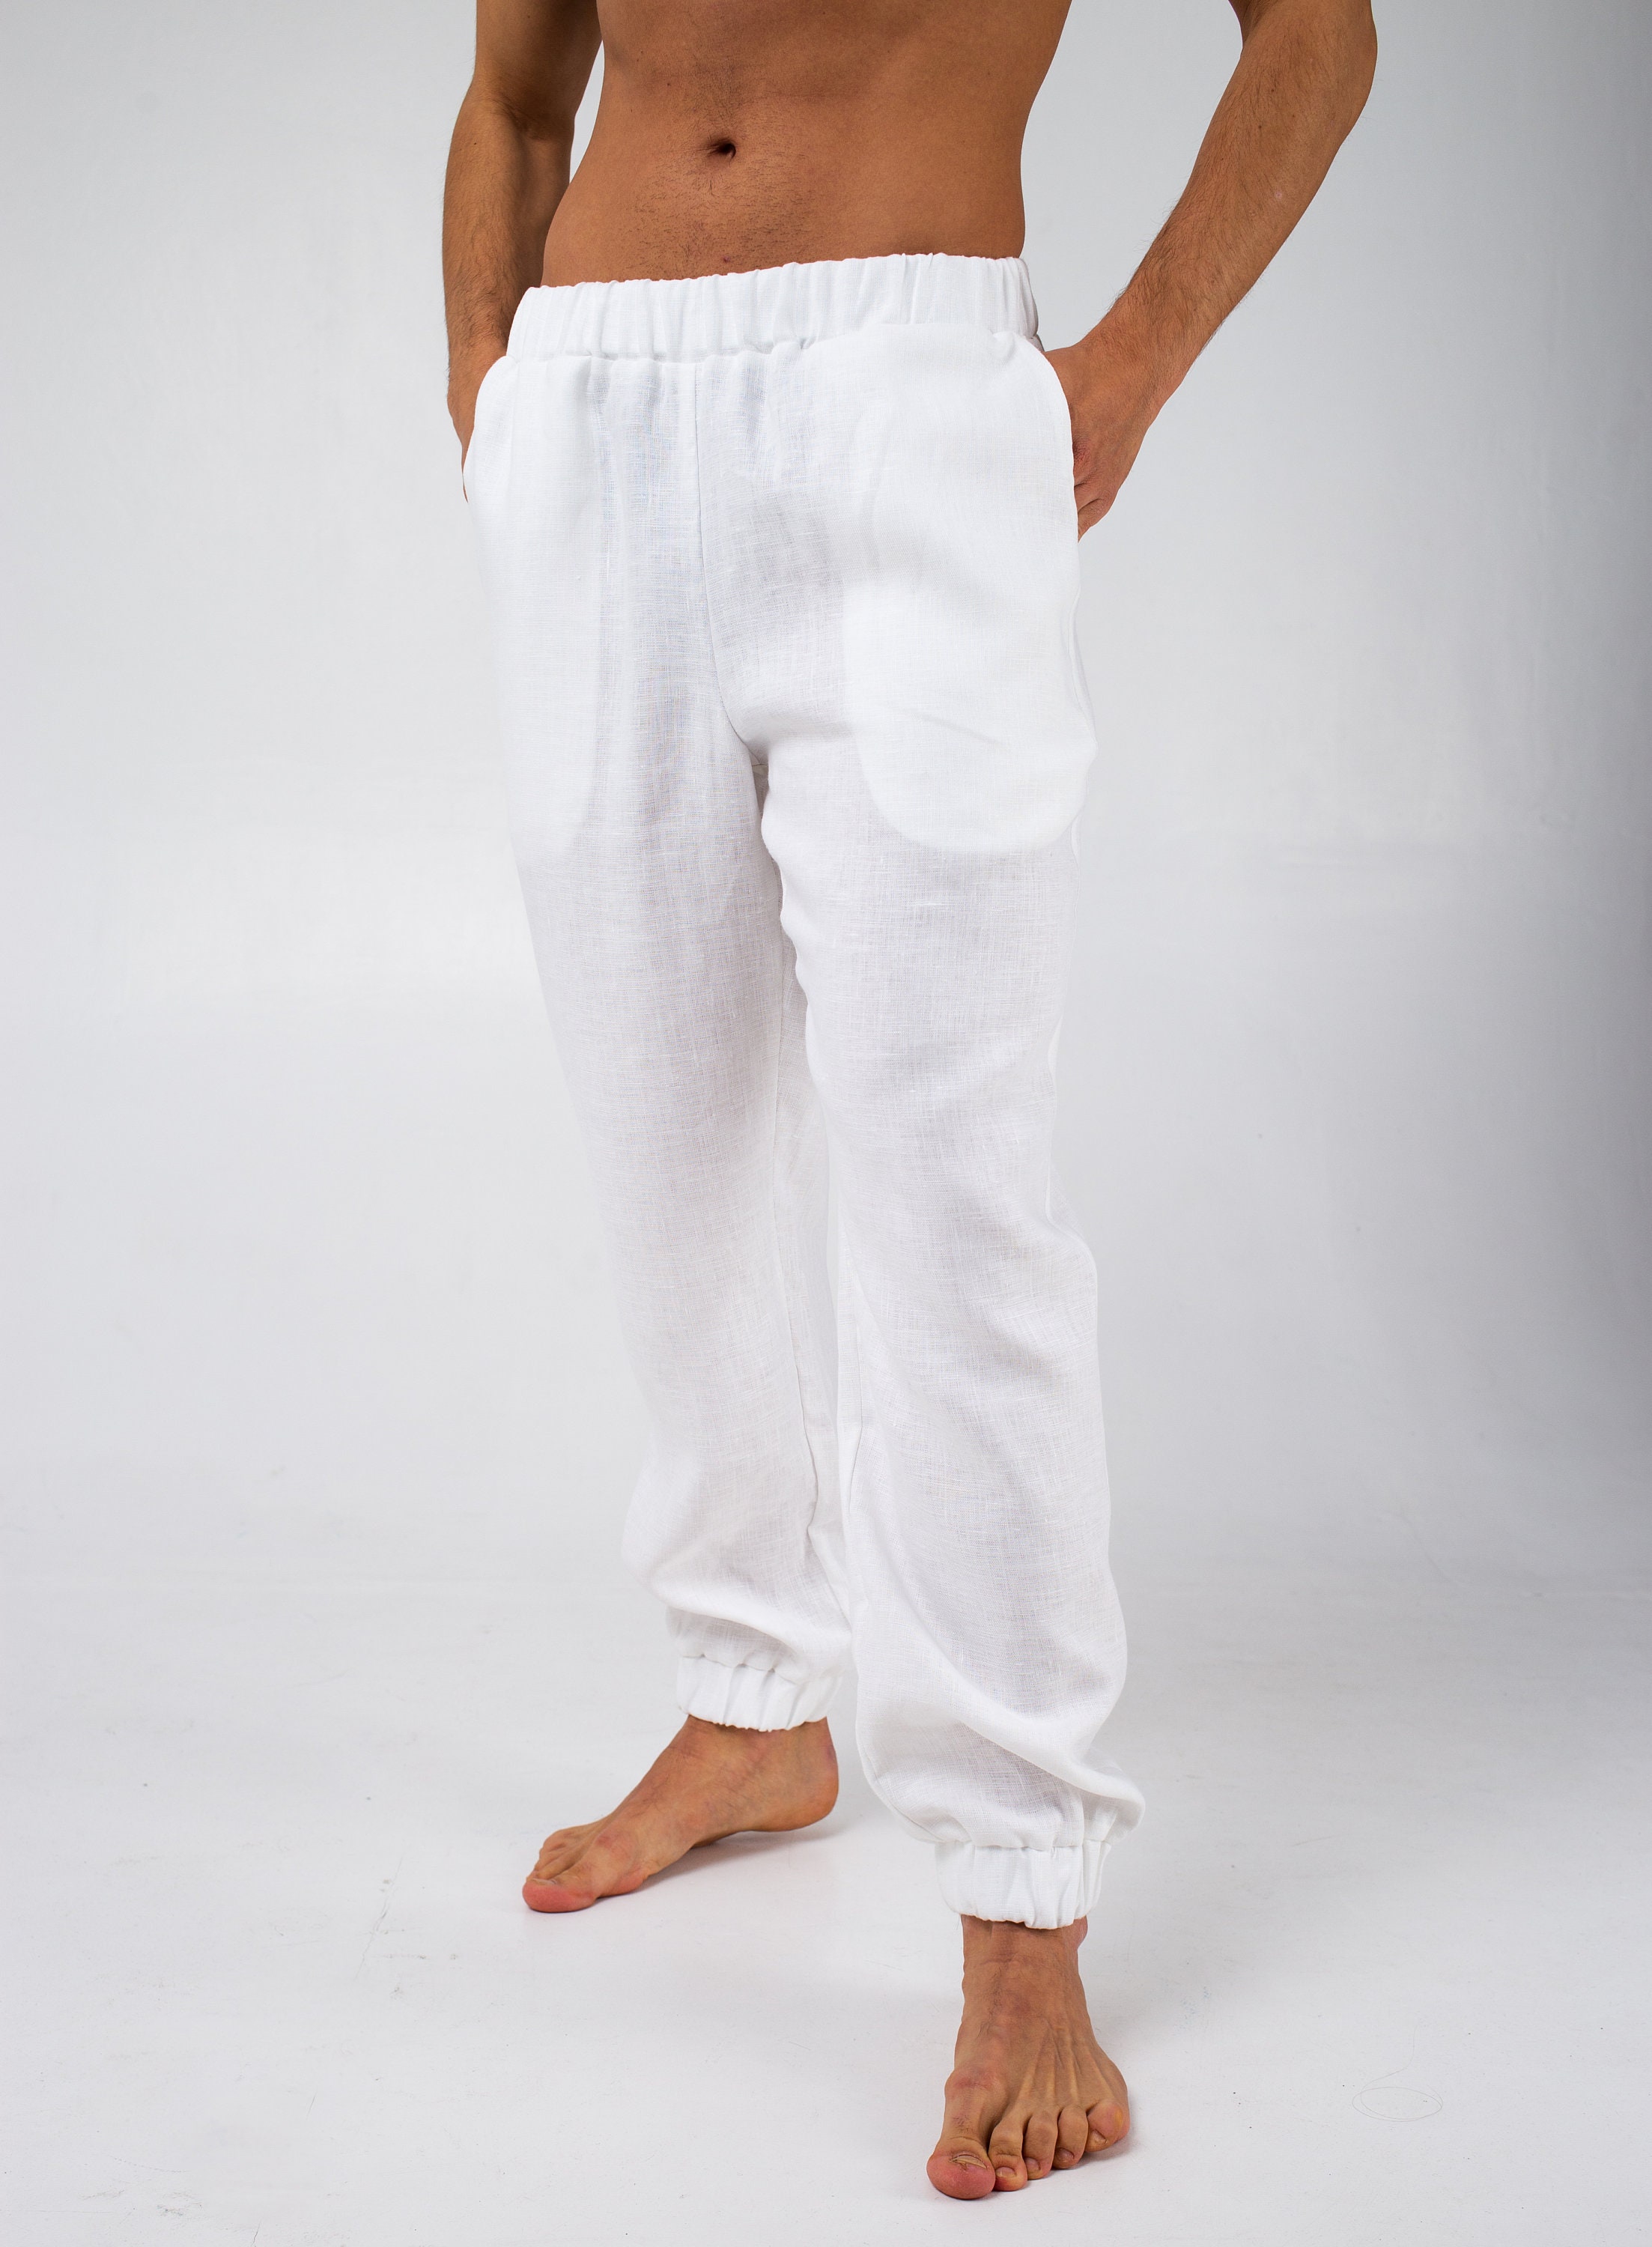 Linen Pants for Men Mens Trousers Linen Clothing Summer - Etsy